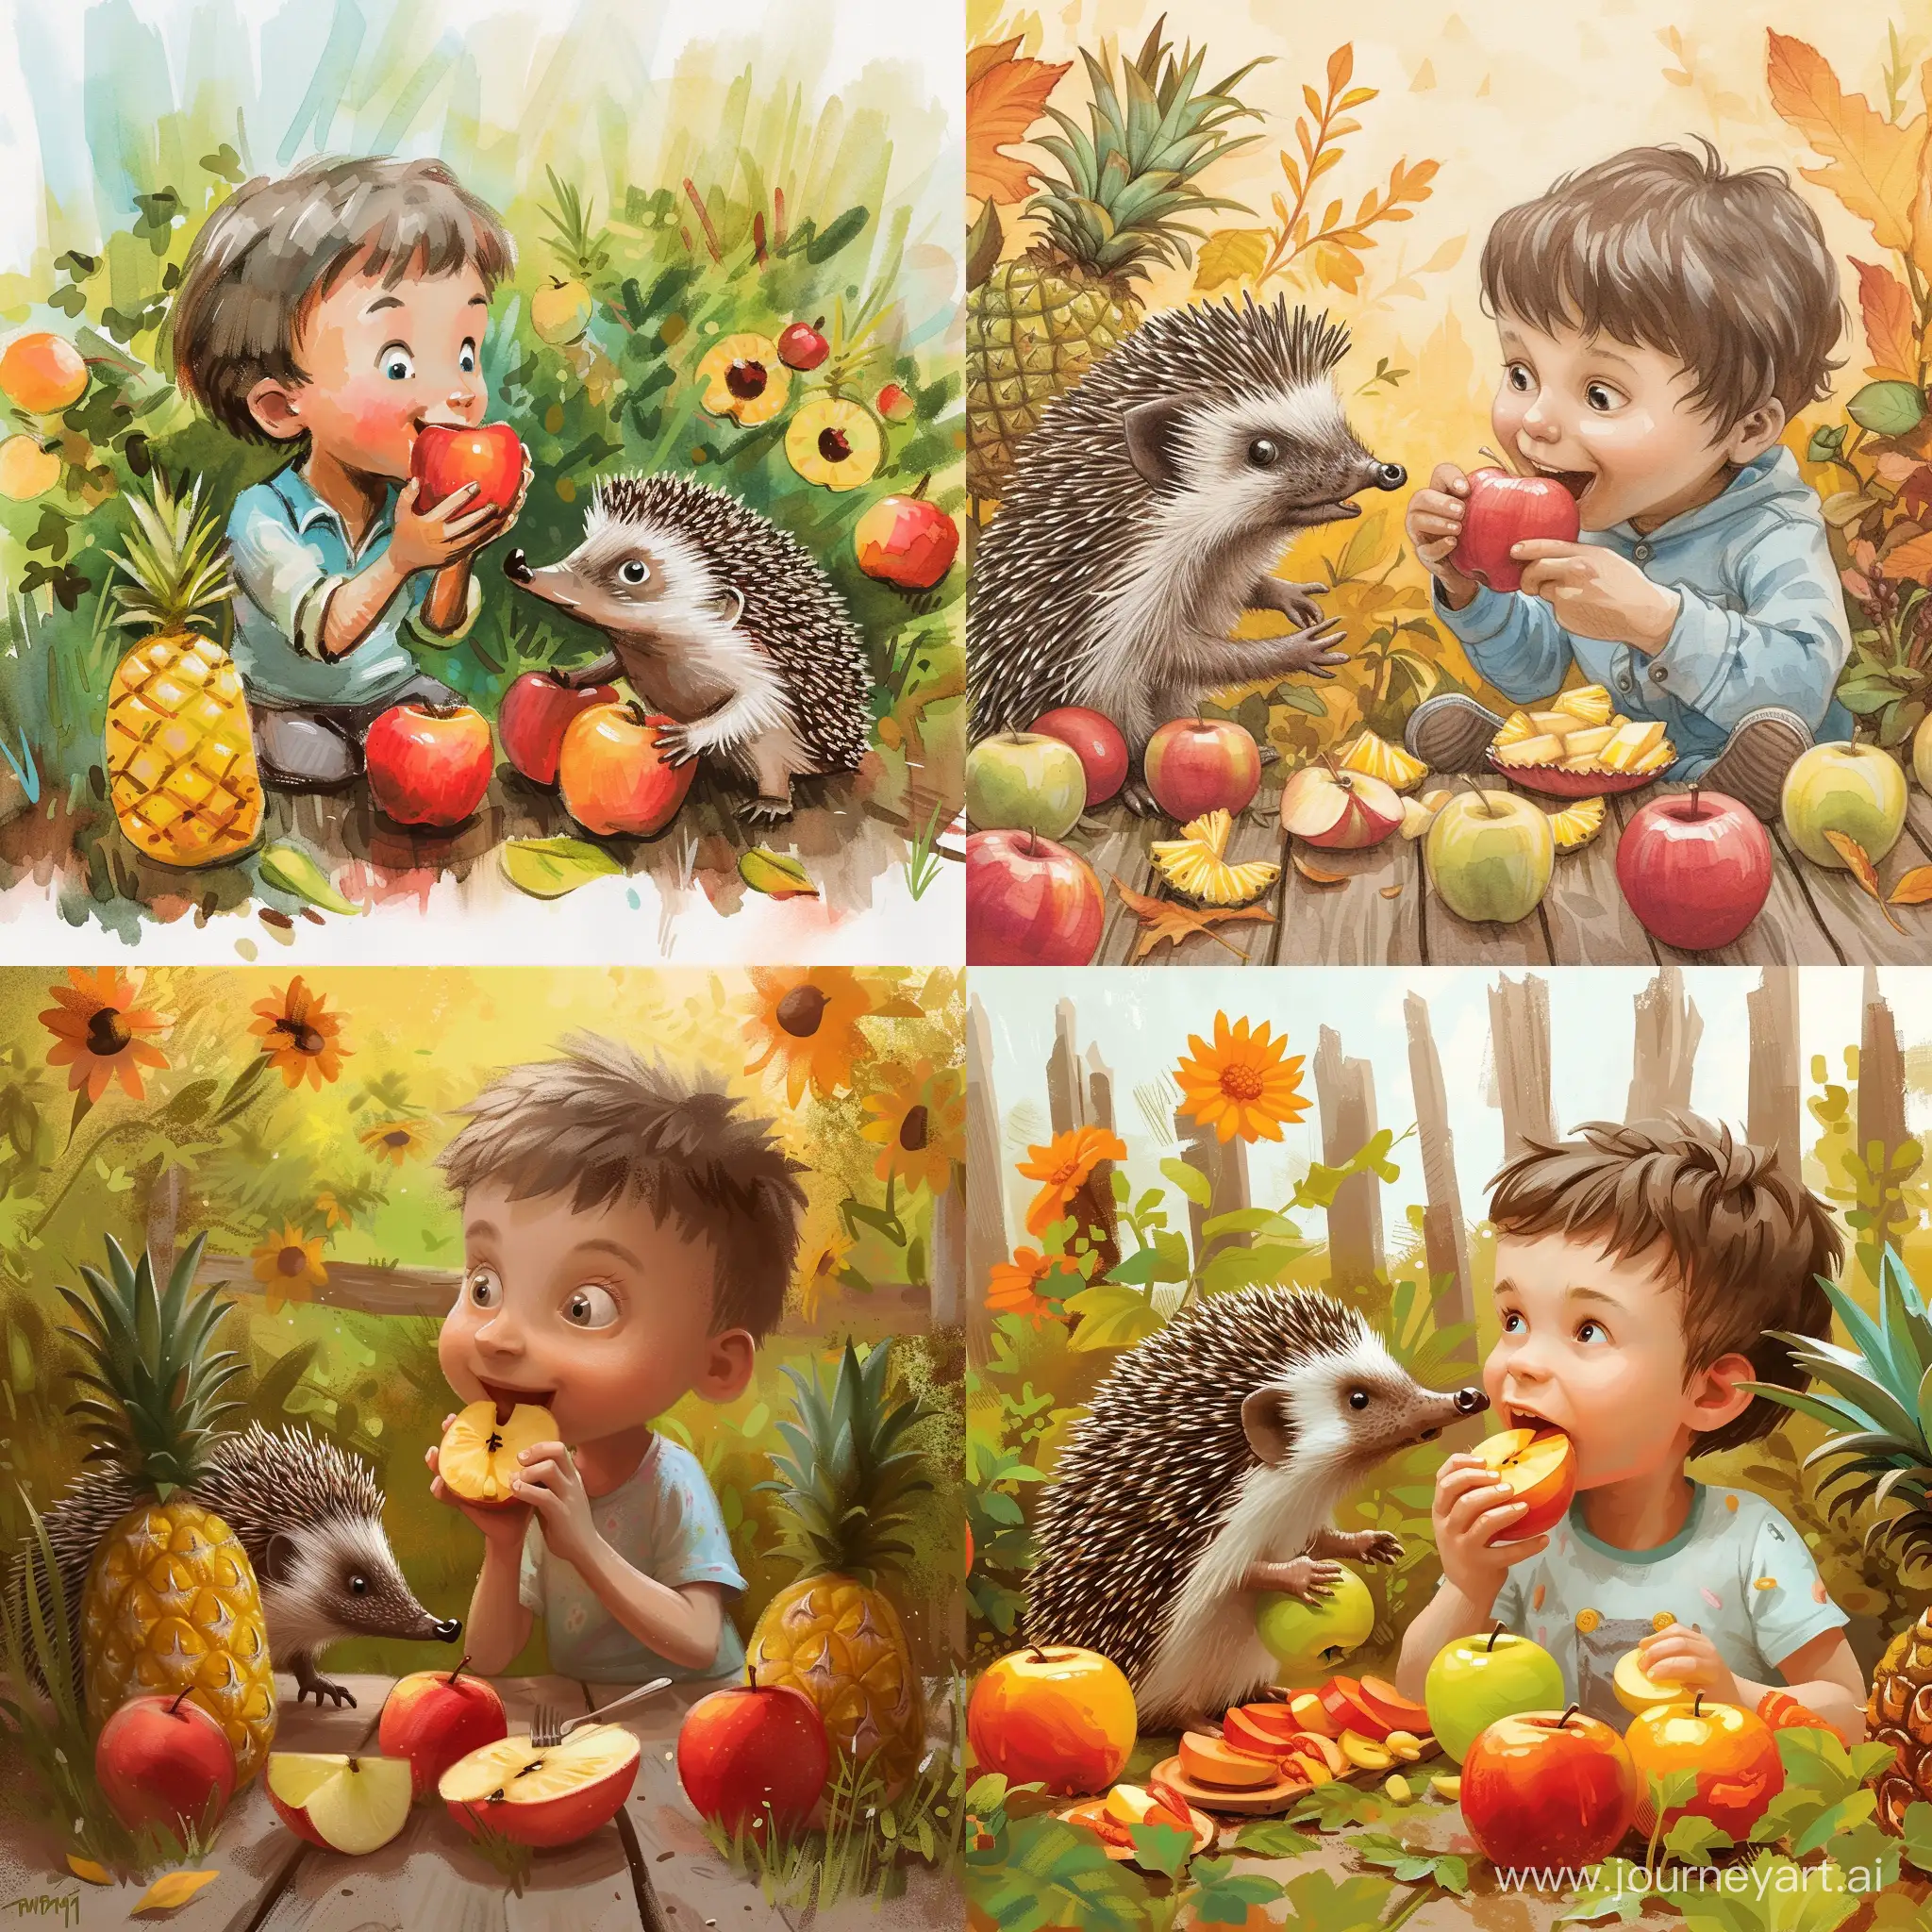 Мальчик Митяй ест яблоки и ананасы в саду с ежиком